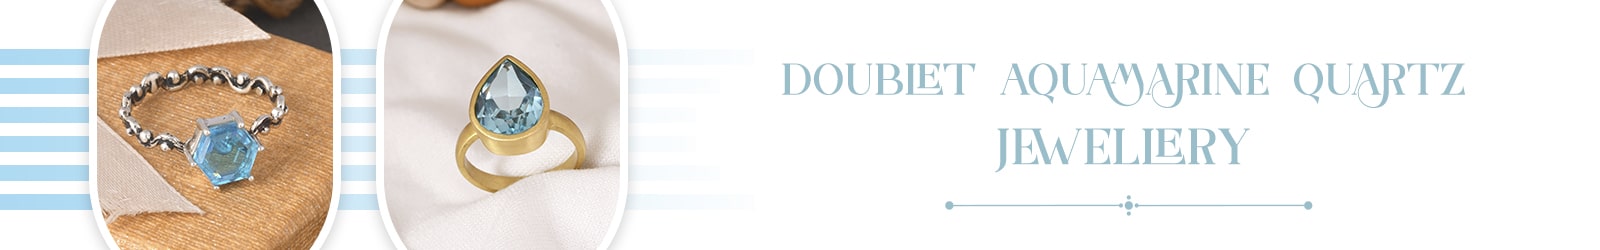 Silver Doublet Aquamarine Quartz Jewelry Wholesale Supplier